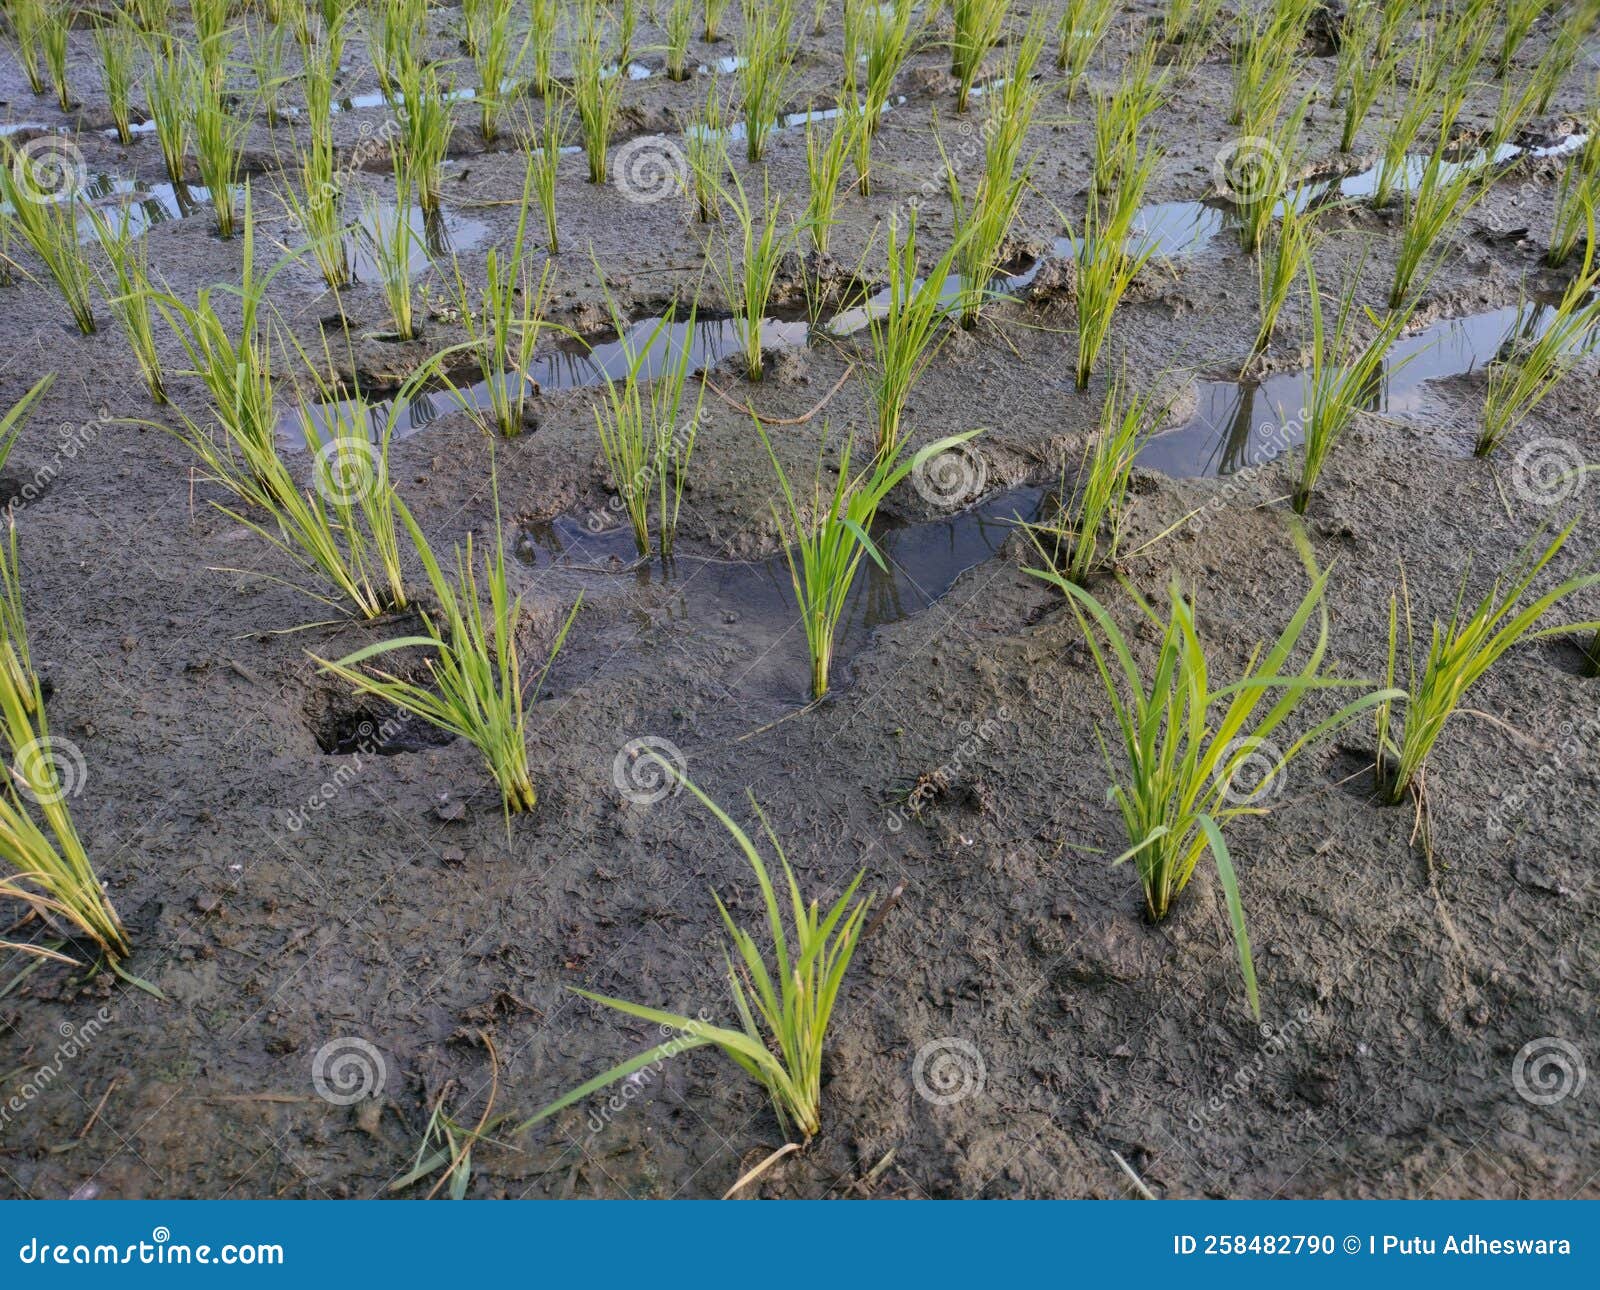 广西杂交水稻种子市值22.6亿元 居全国第2位 - 国际在线移动版